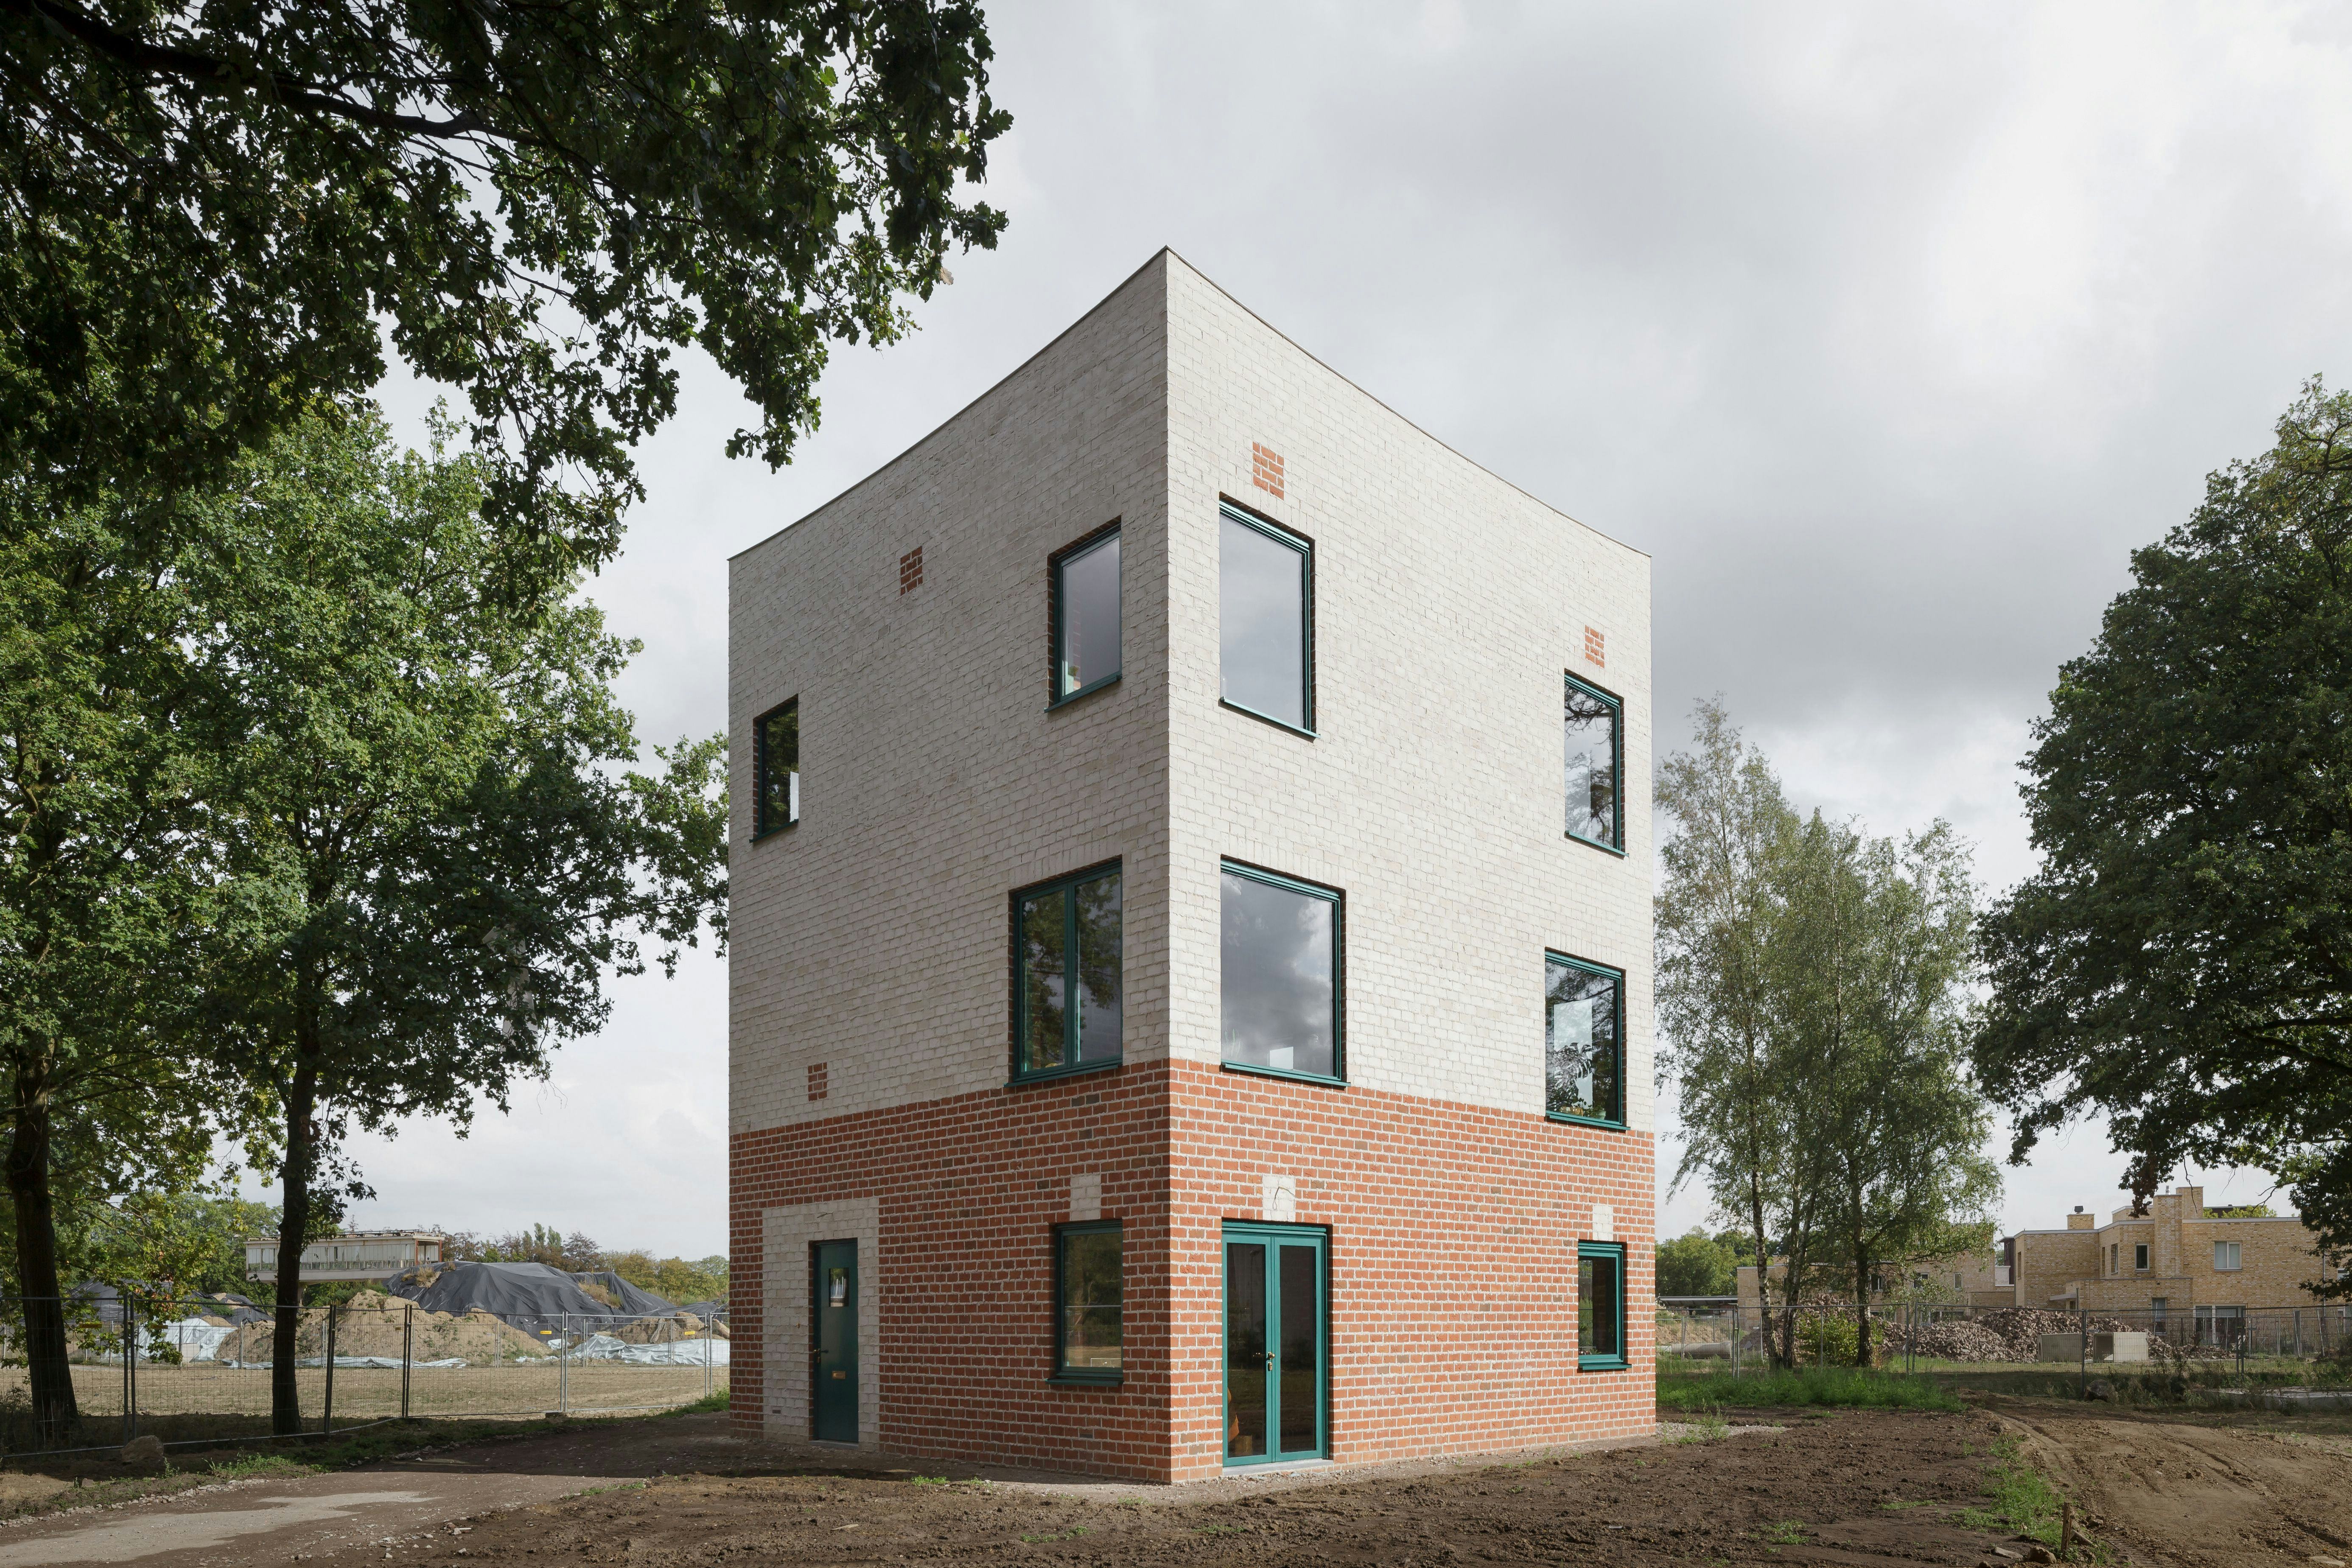 Monadnock won de Brick Award 2018 in de categorie ‘Feeling at home’. Hun Atlas Huis bewijst dat je een woning kunt bouwen in hoge kwaliteit op kleine schaal. Architecten: Sandor Naus, Job Floris; foto: Stijn Bollaert.